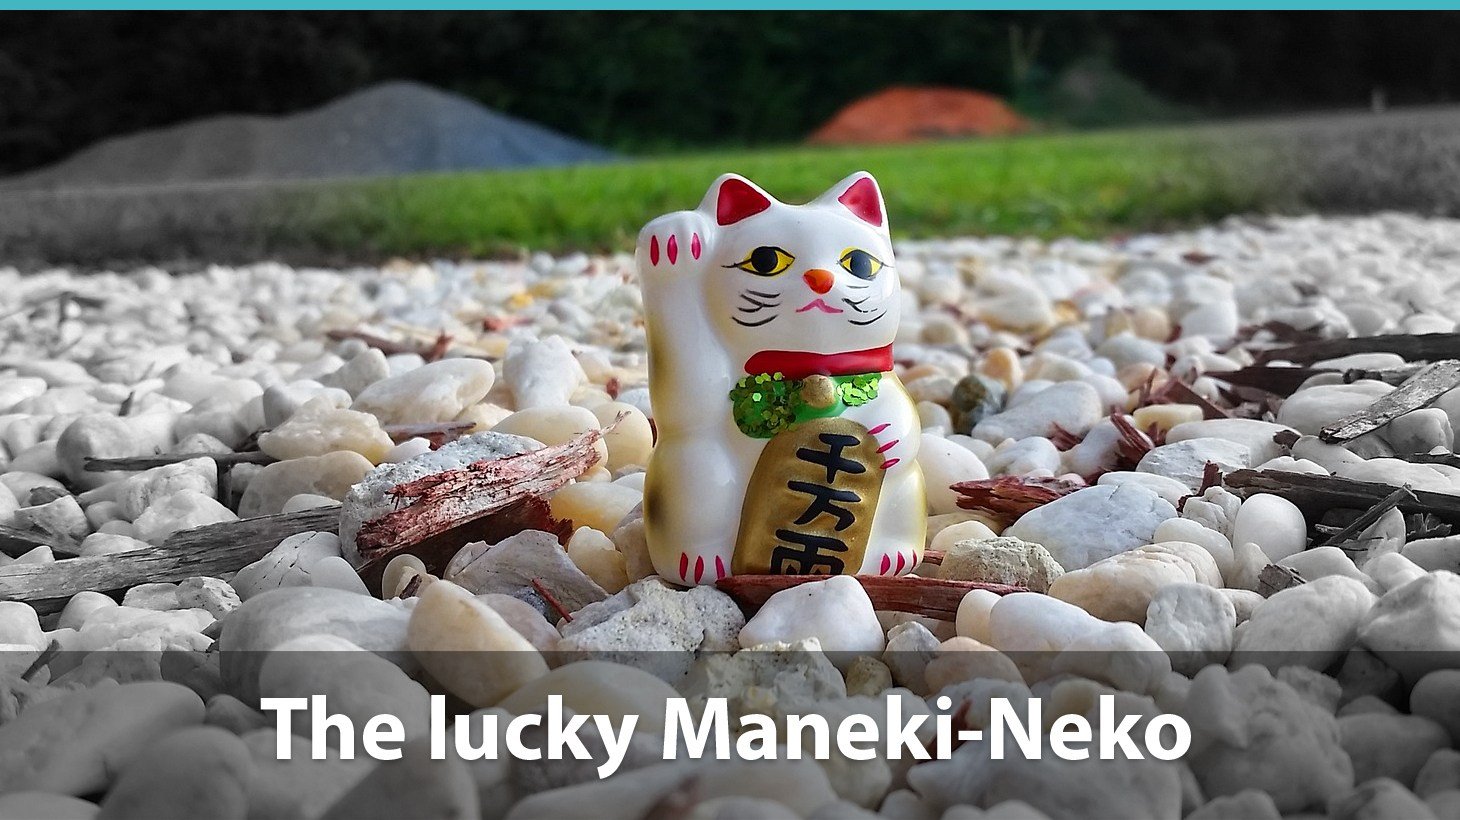 The Lucky Maneki-Neko